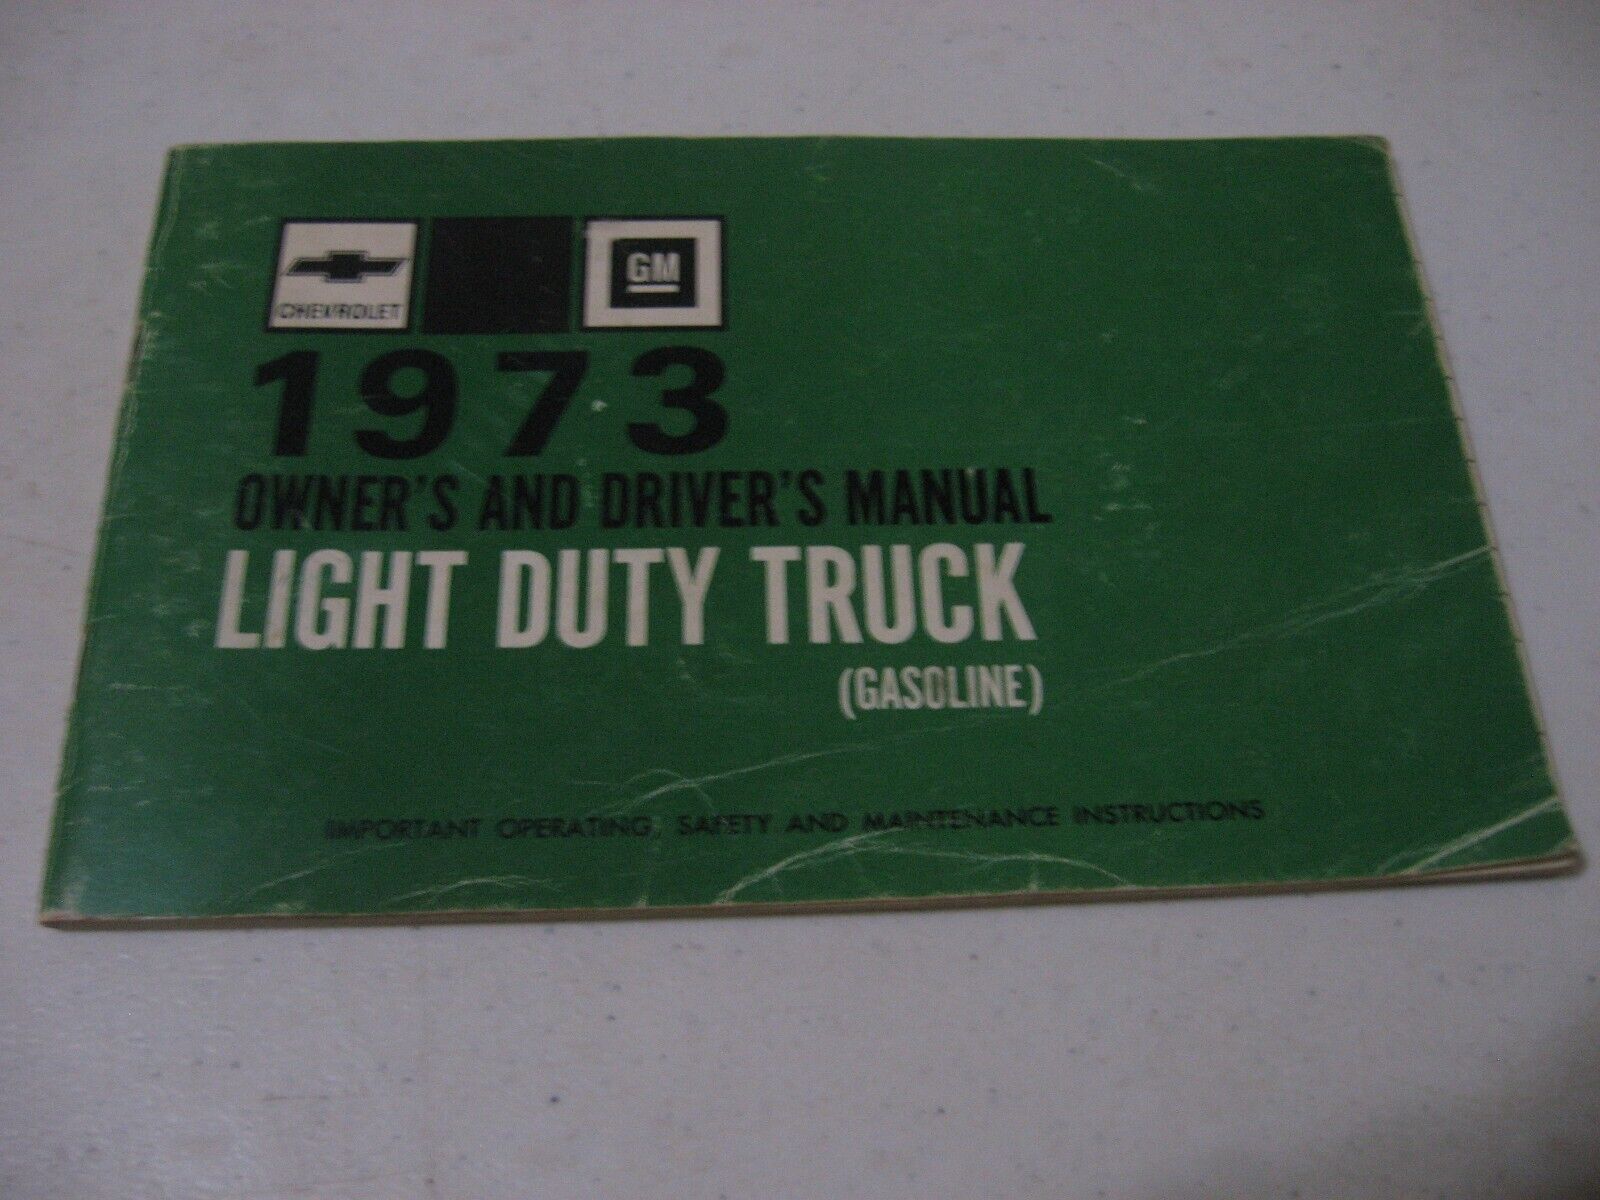 1973 GM Chevrolet Light Duty Trucks - Gasoline - Owner's Manual